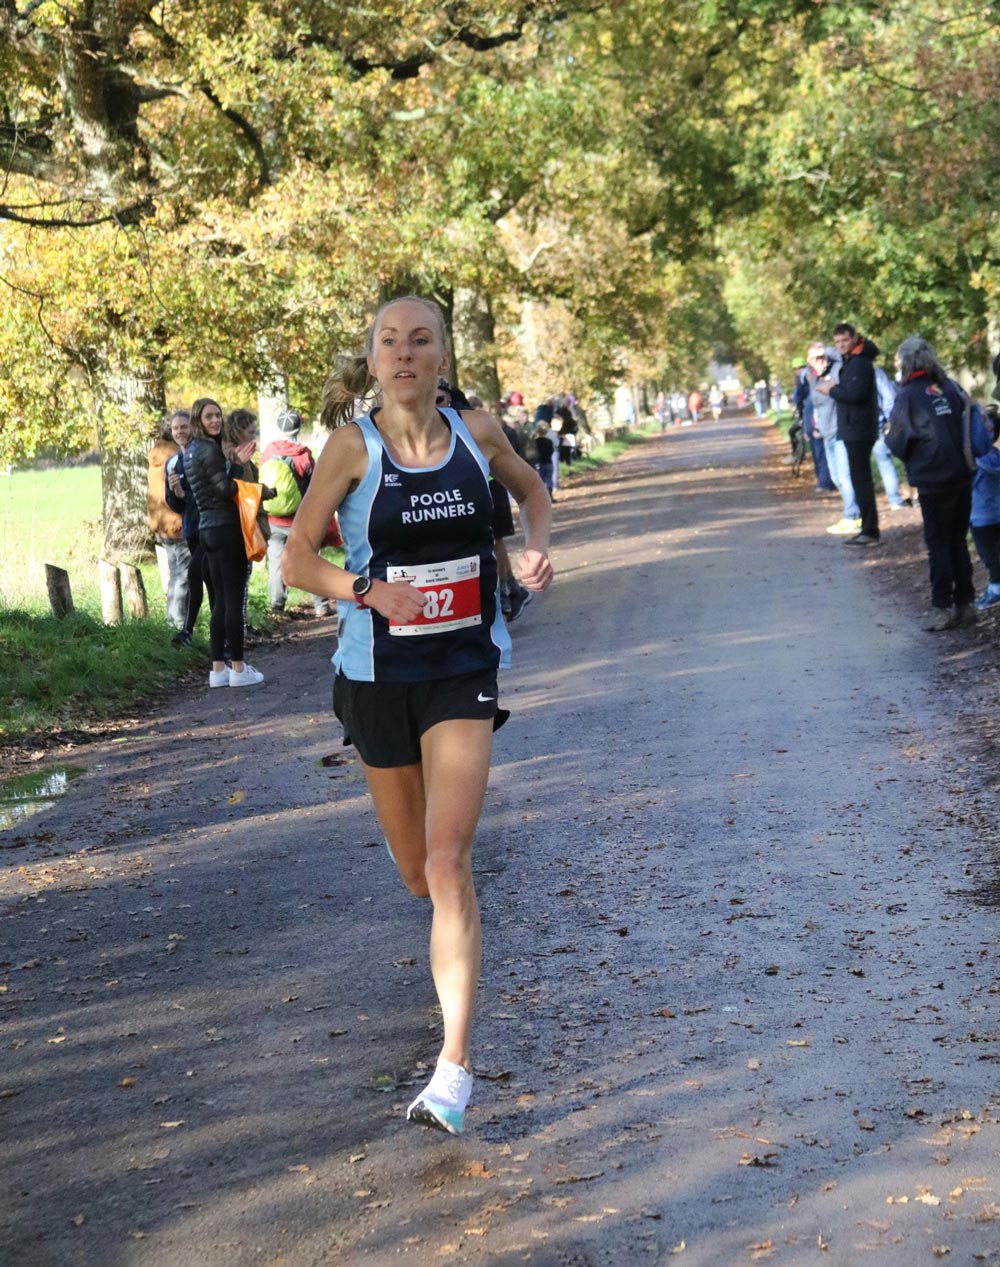 women’s race winner Vicky Ingham of Poole Runners